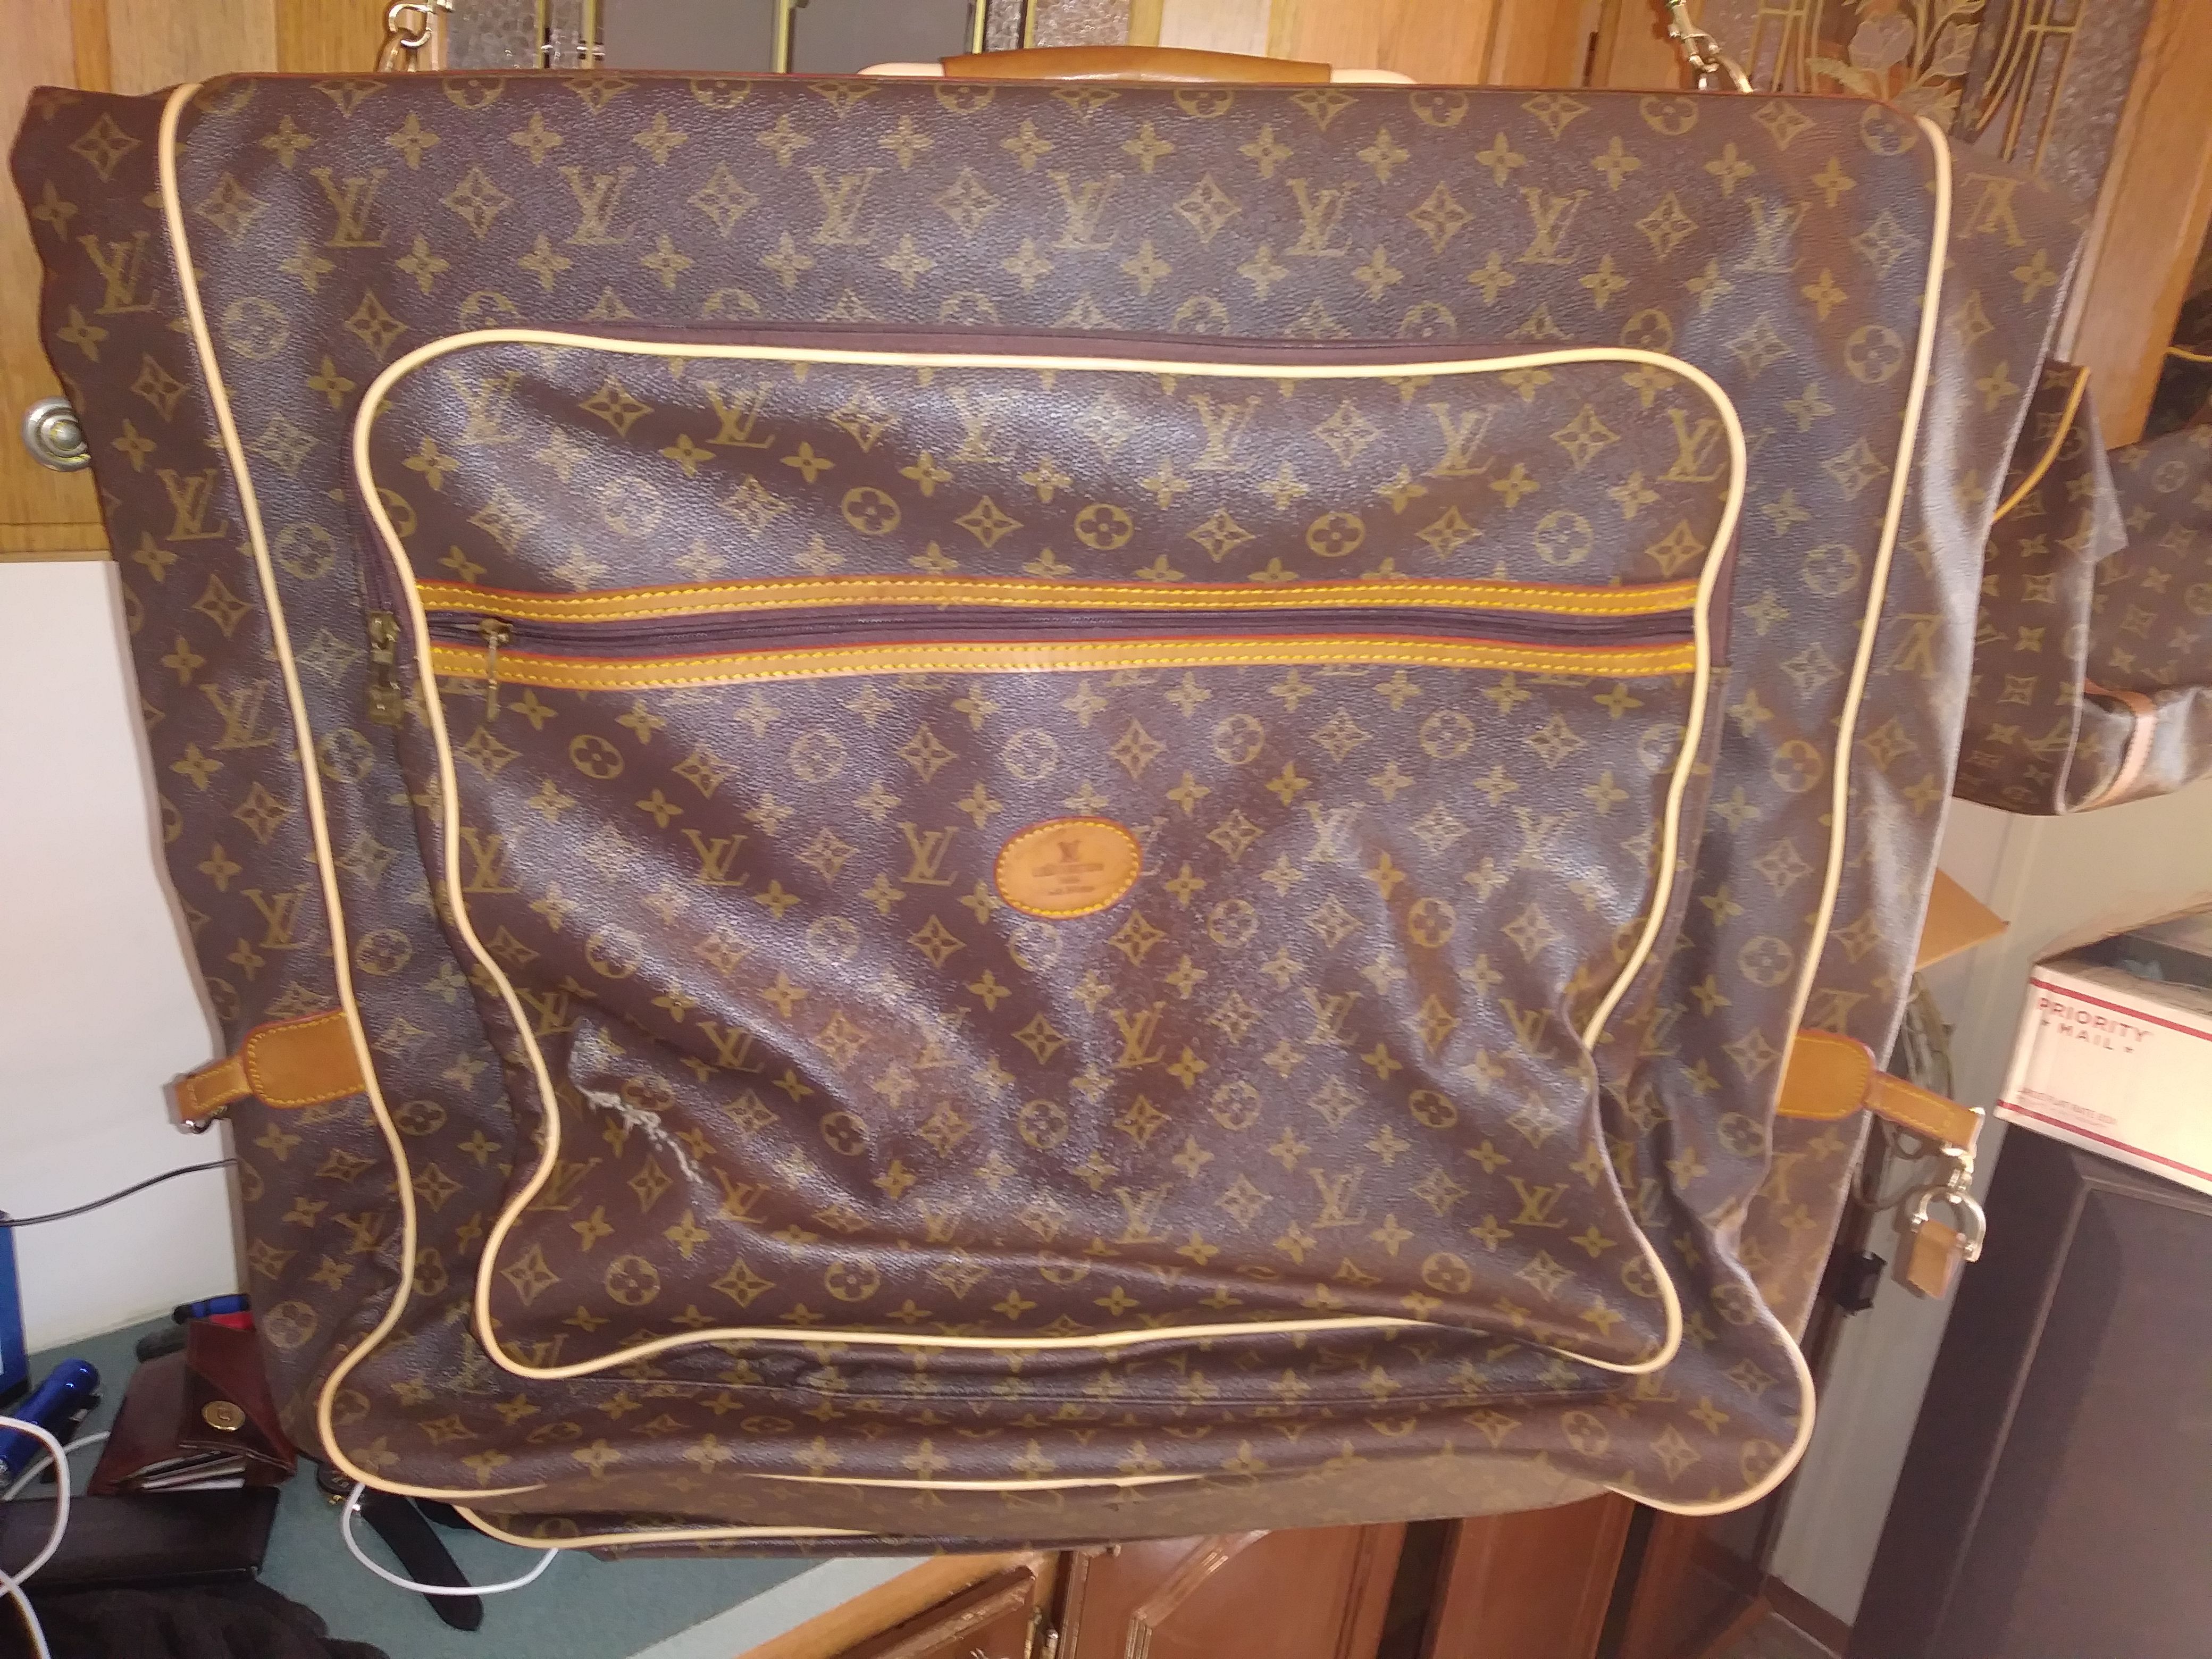 Louis Vuitton - Garment Vintage Monogram Canvas Travel Bag